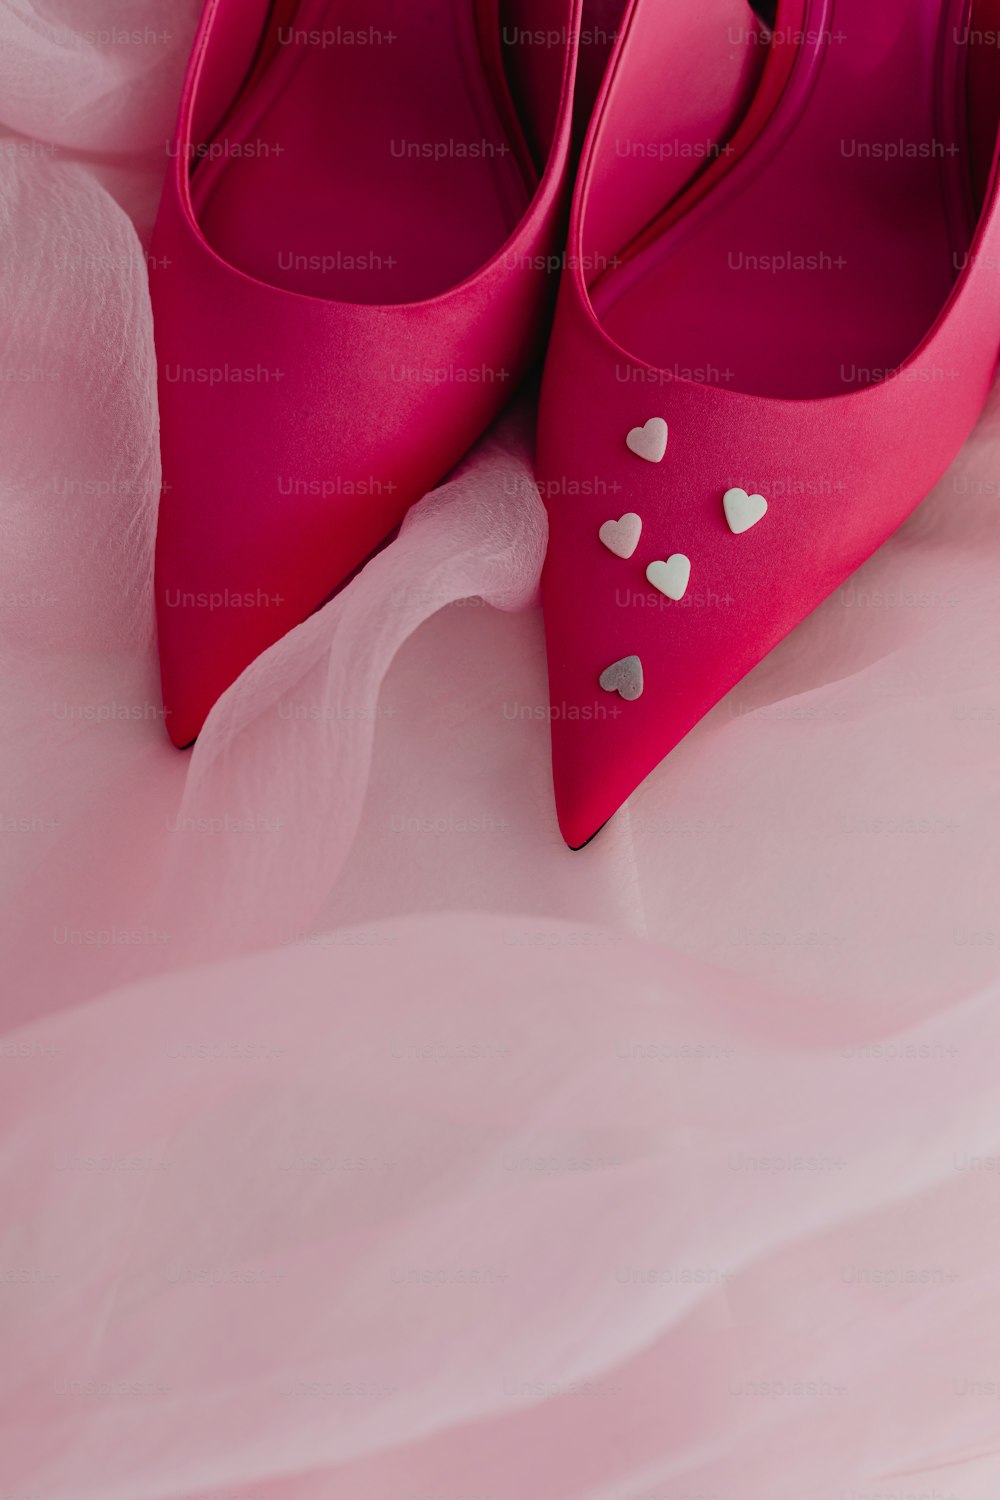 ハートが入ったピンクの靴